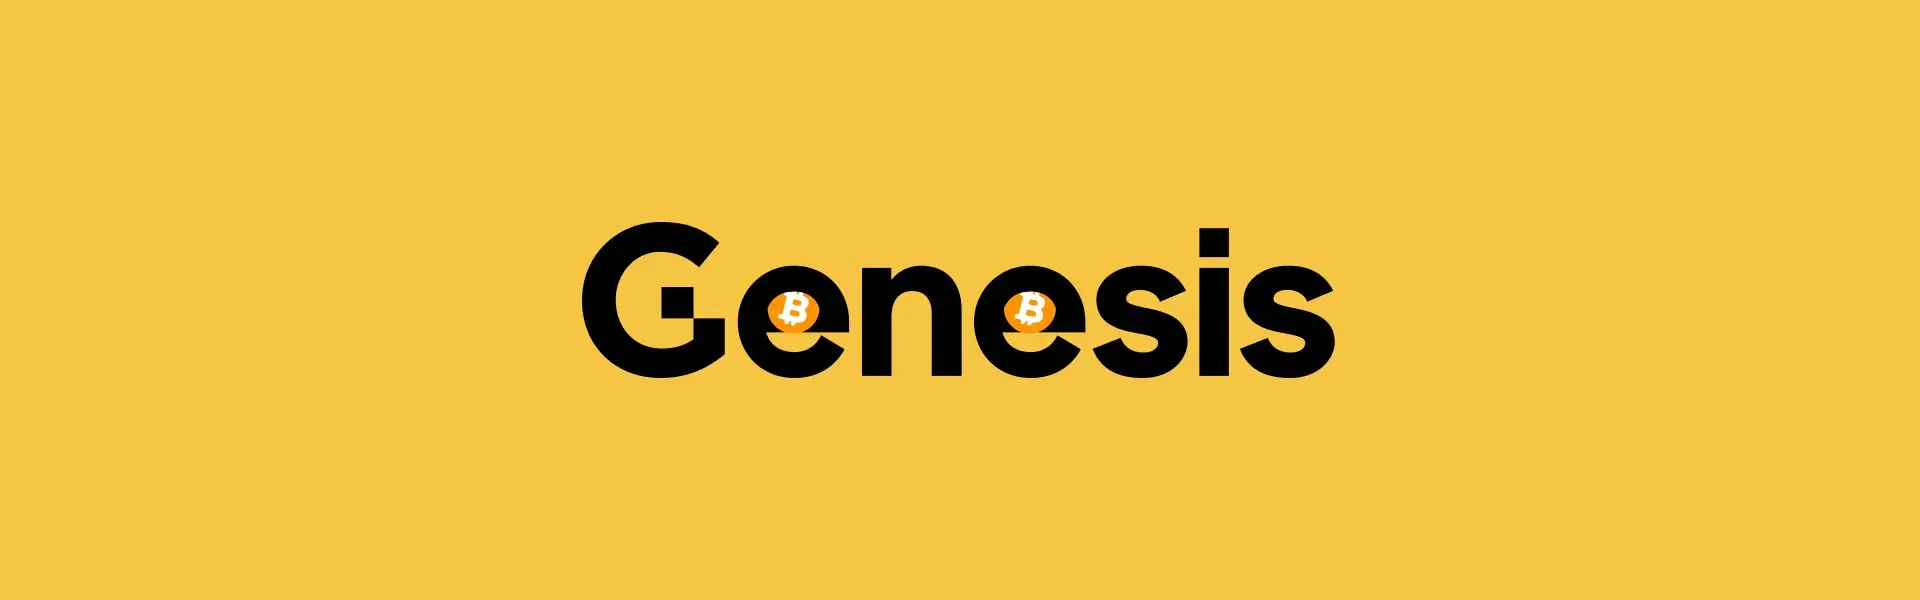 Genesis подає заявку на схвалення розпродажу активів GBTC на суму 1,4 млрд доларів.